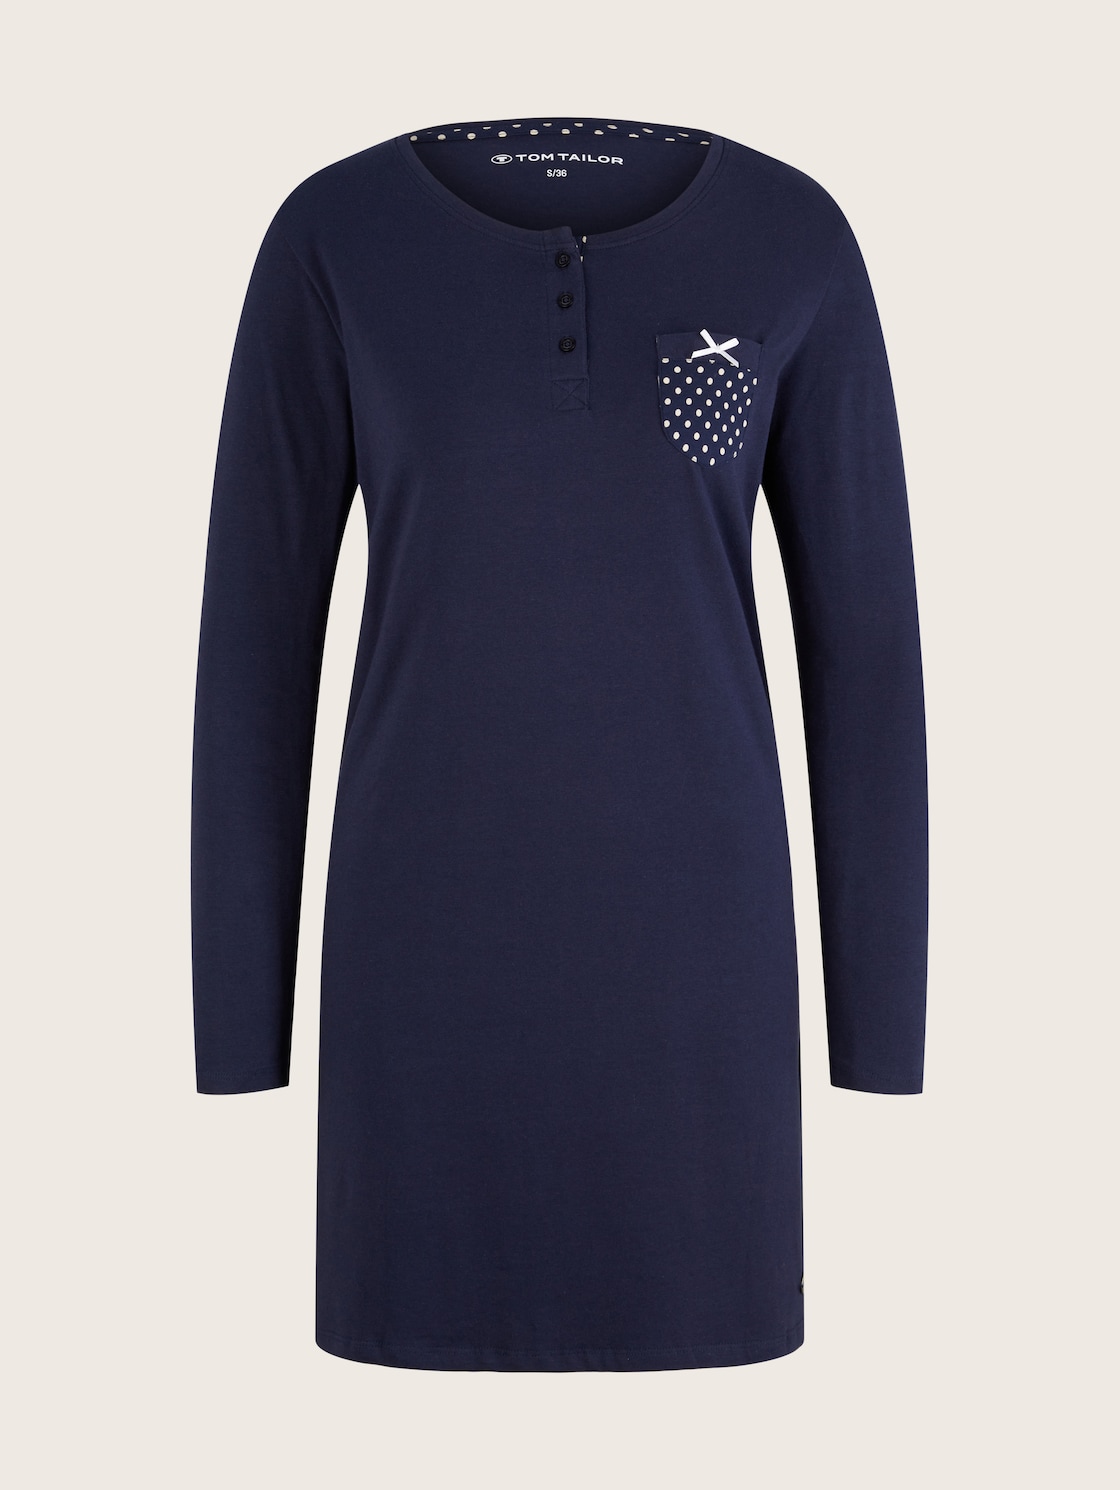 TOM TAILOR Damen Pyjama Kleid mit Brusttasche, blau, Punktemuster, Gr. 40 von Tom Tailor